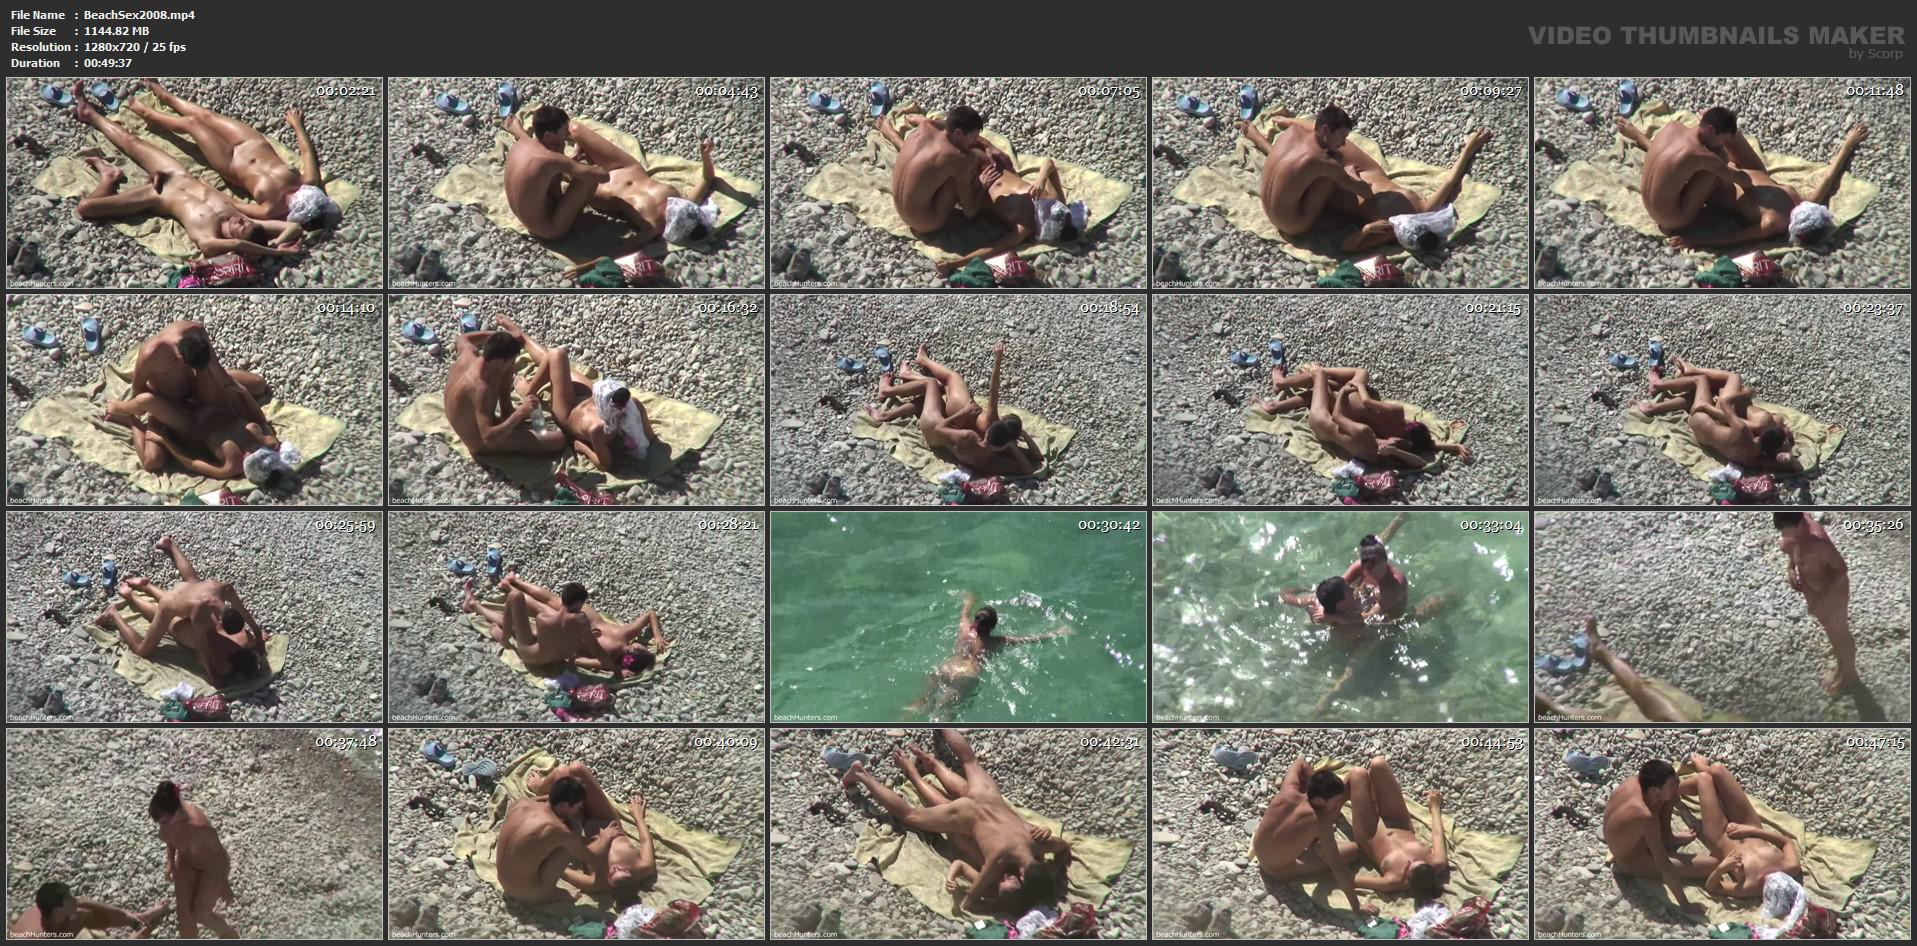 Intip seks di tempat umum pantai